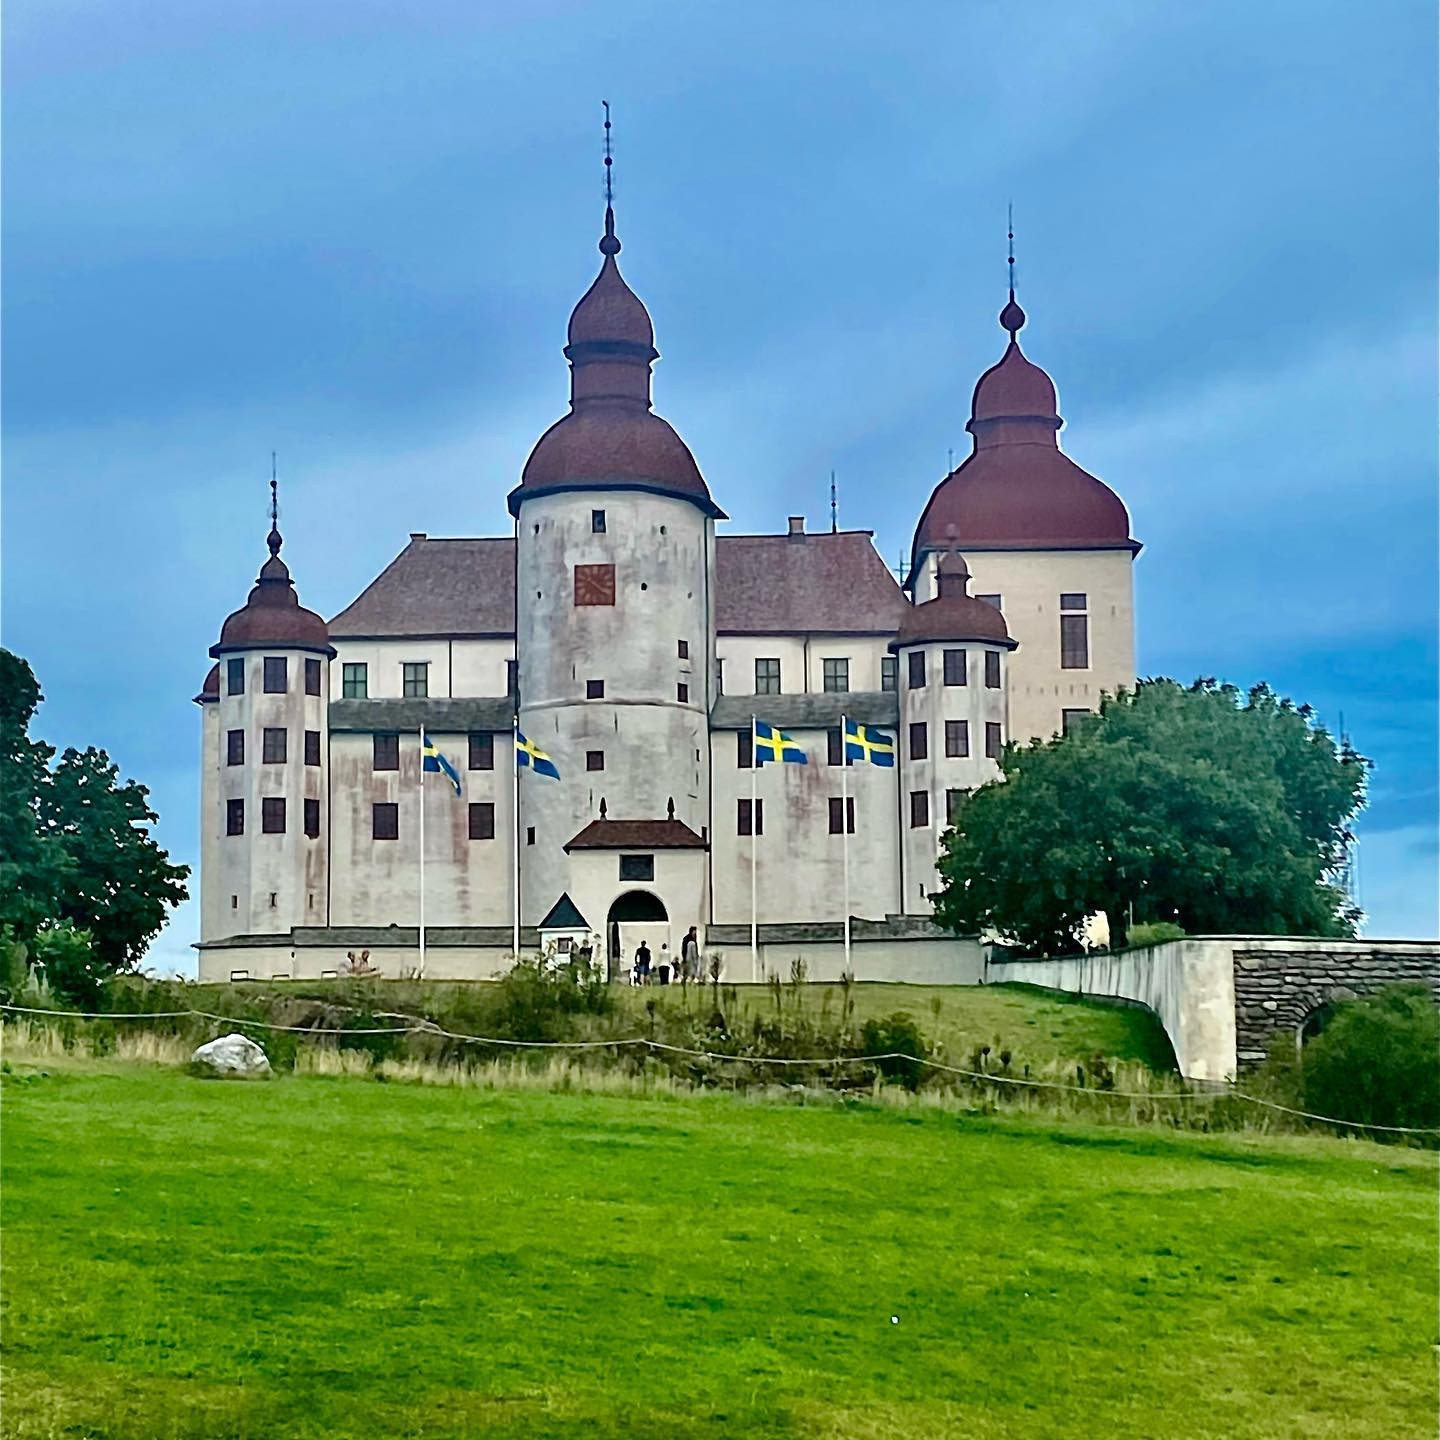 Lackö Castle — Sweden